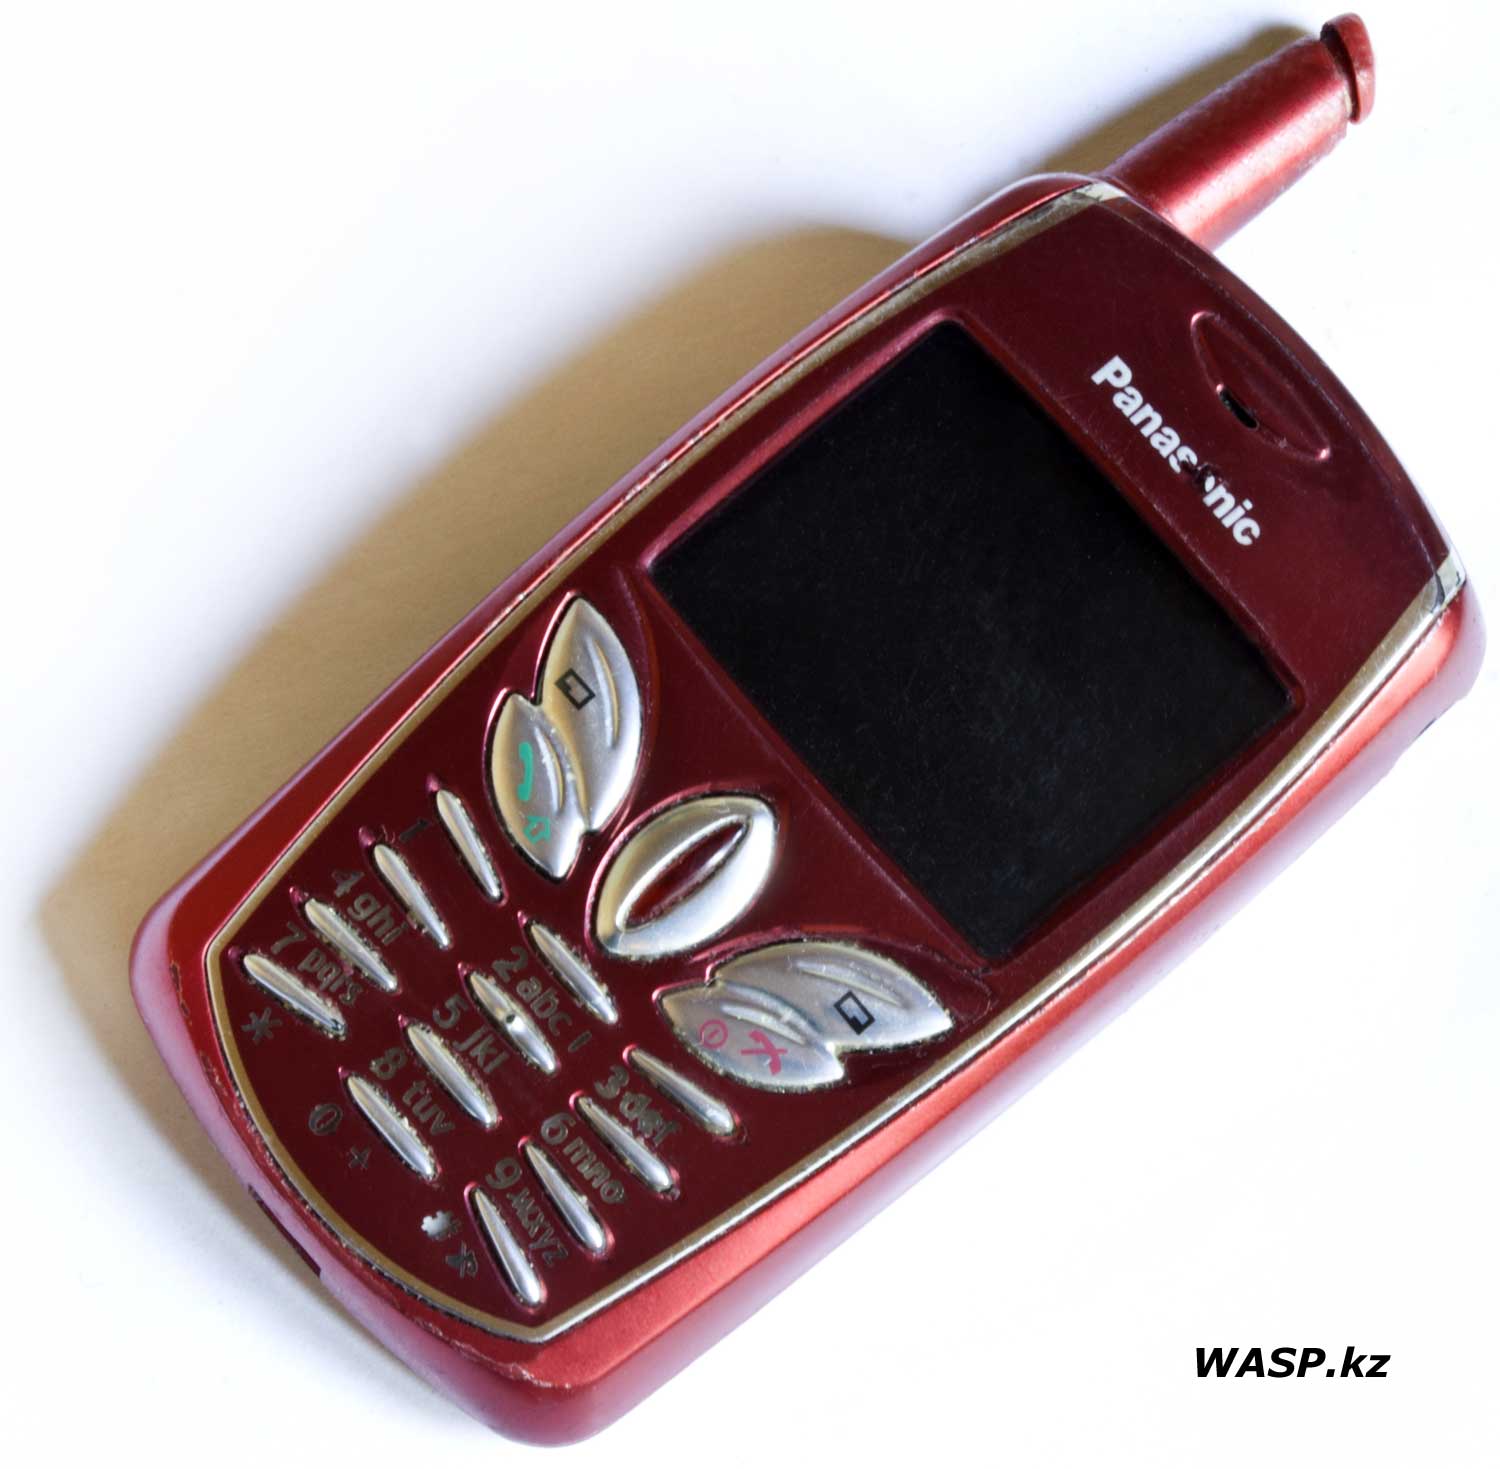 Panasonic EB-G50 полное описание мобильного телефона 2004 года